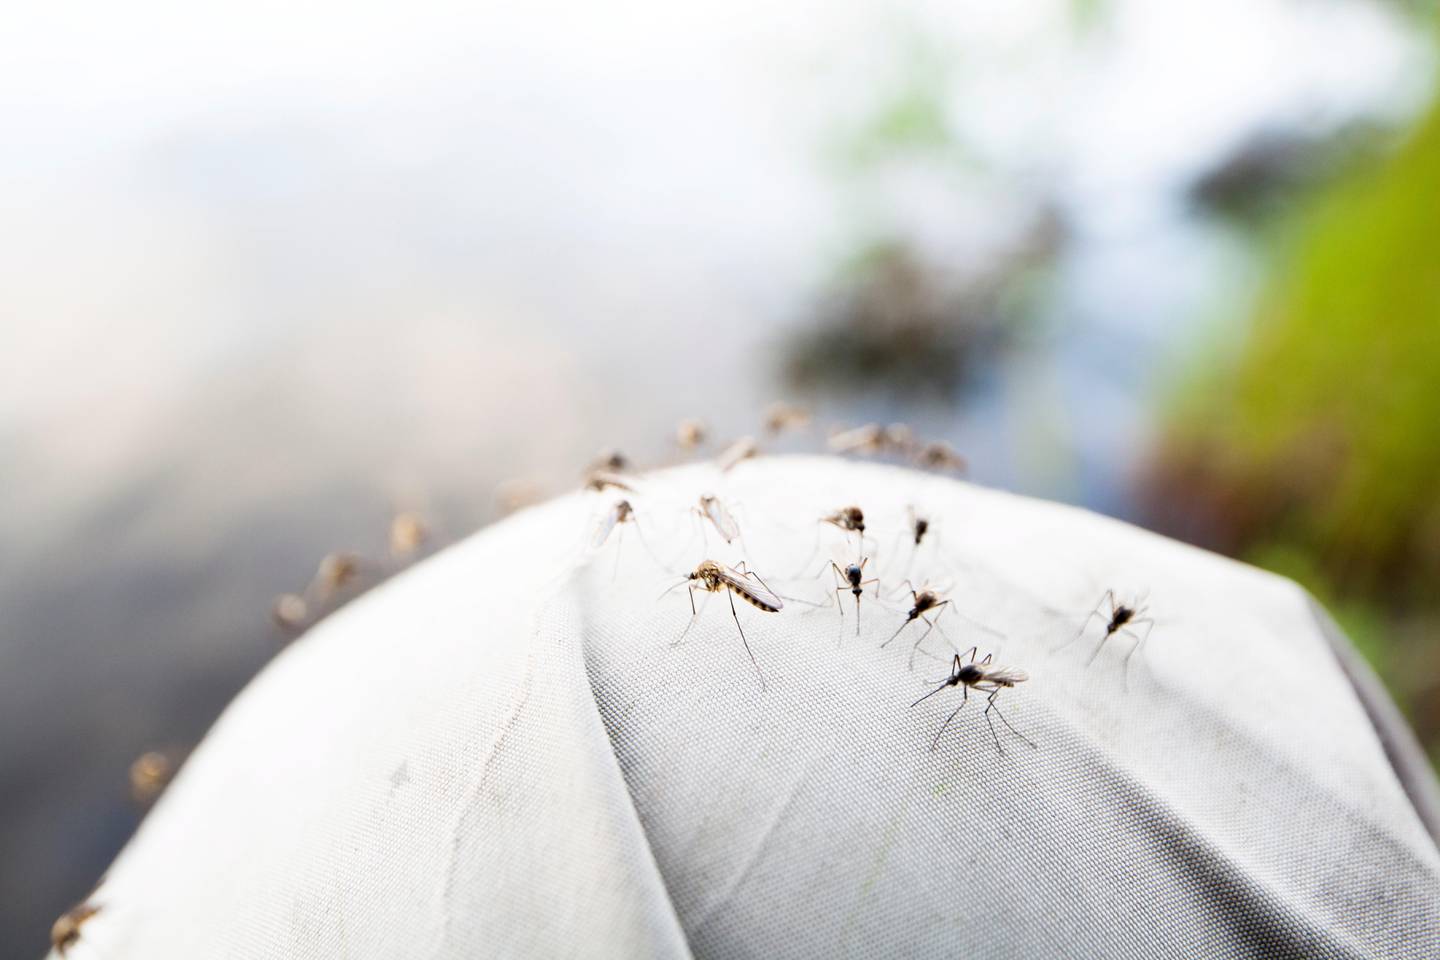 SOMMERPLAGE: Fordi mygg kan spre smitte, ønsker Det europeiske smitteverninstituttet å kartlegge hvilke arter som finnes i hvilke områder. Foto: Fredrik Ludvigsson / NTB scanpix  FOTO: Fredrik Ludvigsson / 